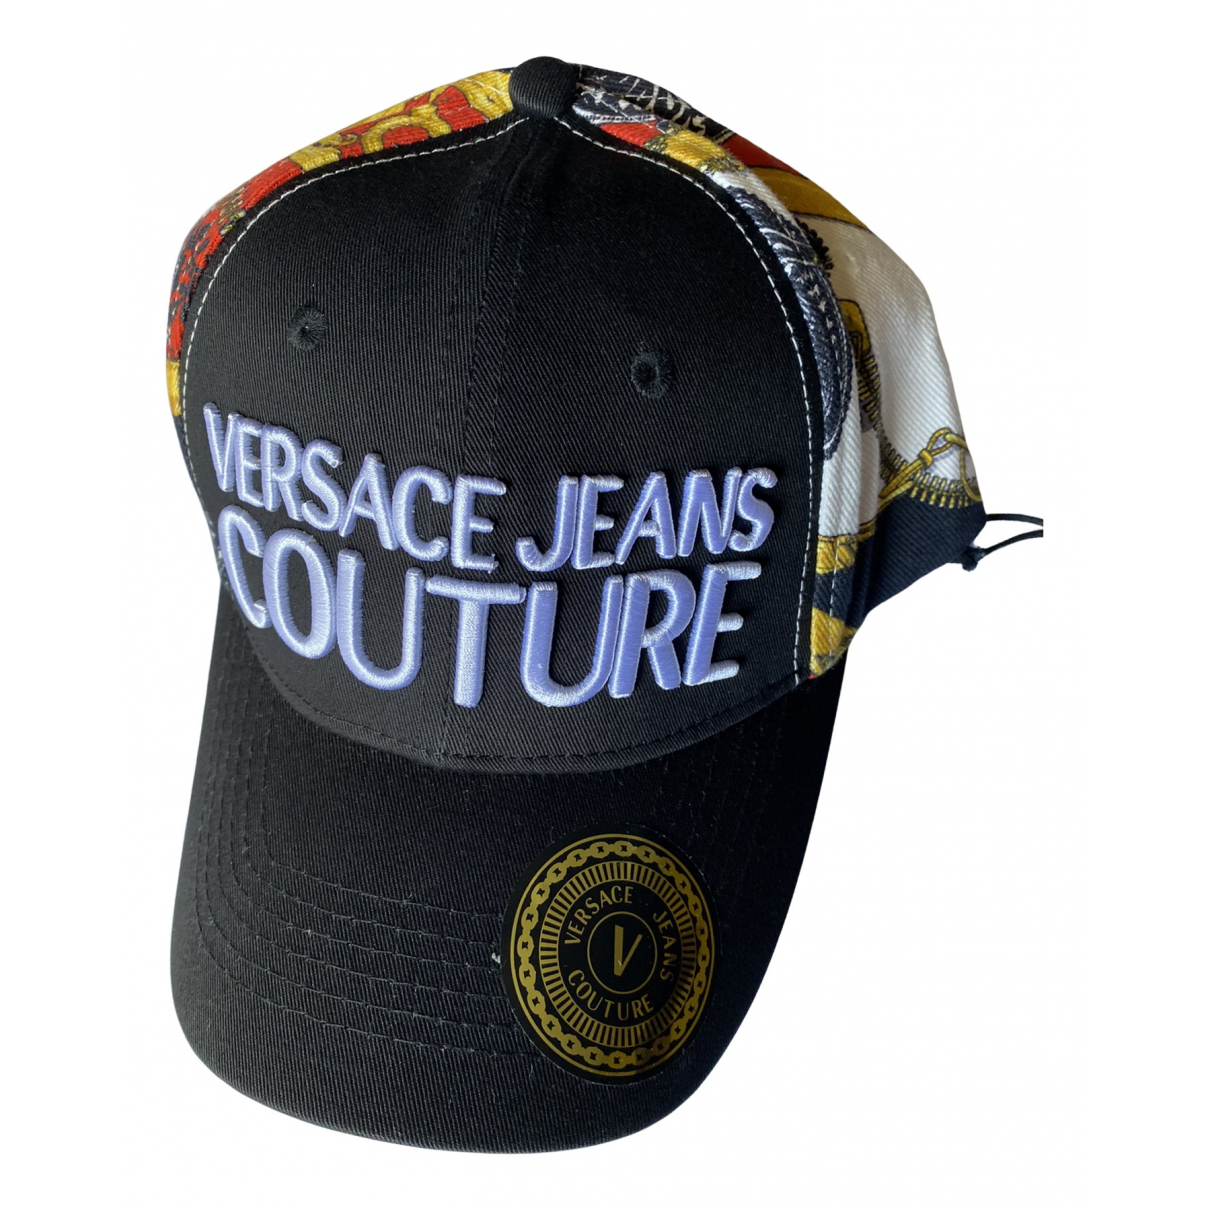 Sombrero / gorro - Versace Jeans Couture - Modalova